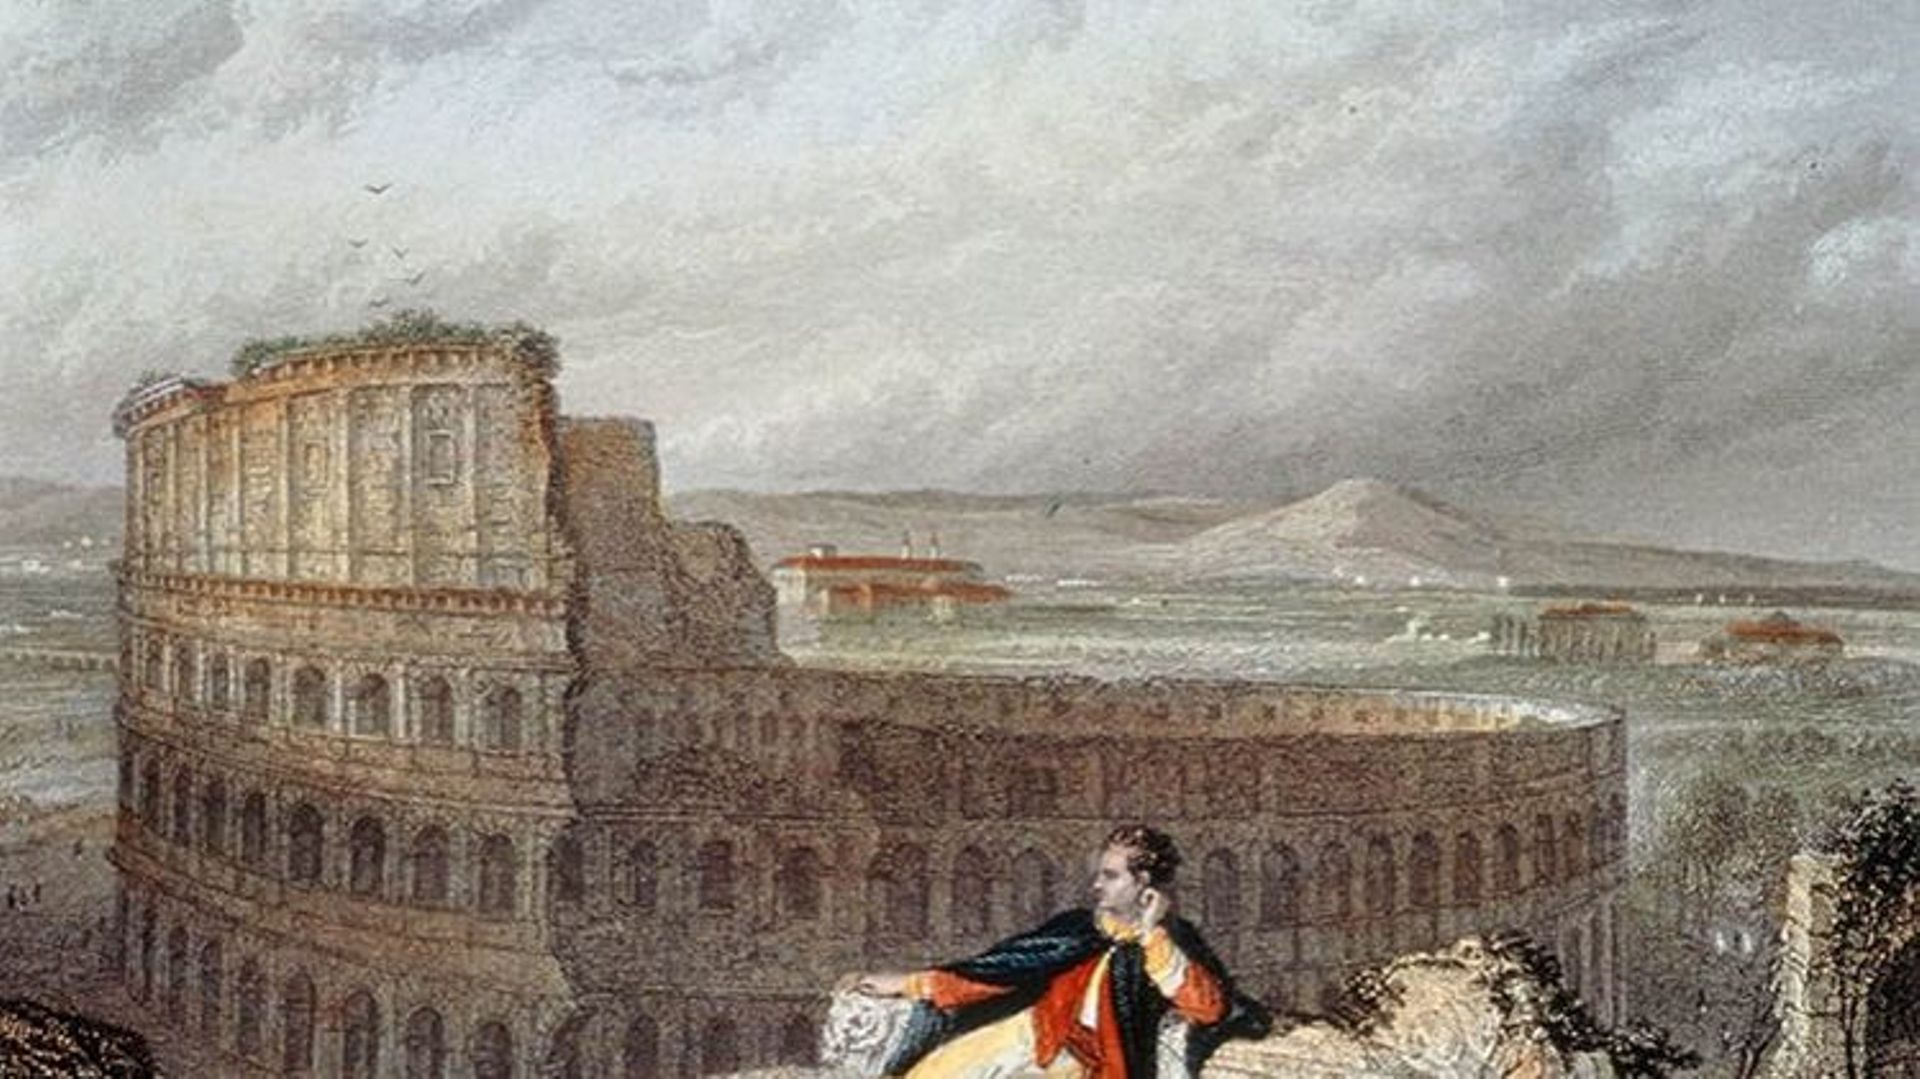 Le "Grand Tour" du poète britannique Lord Byron